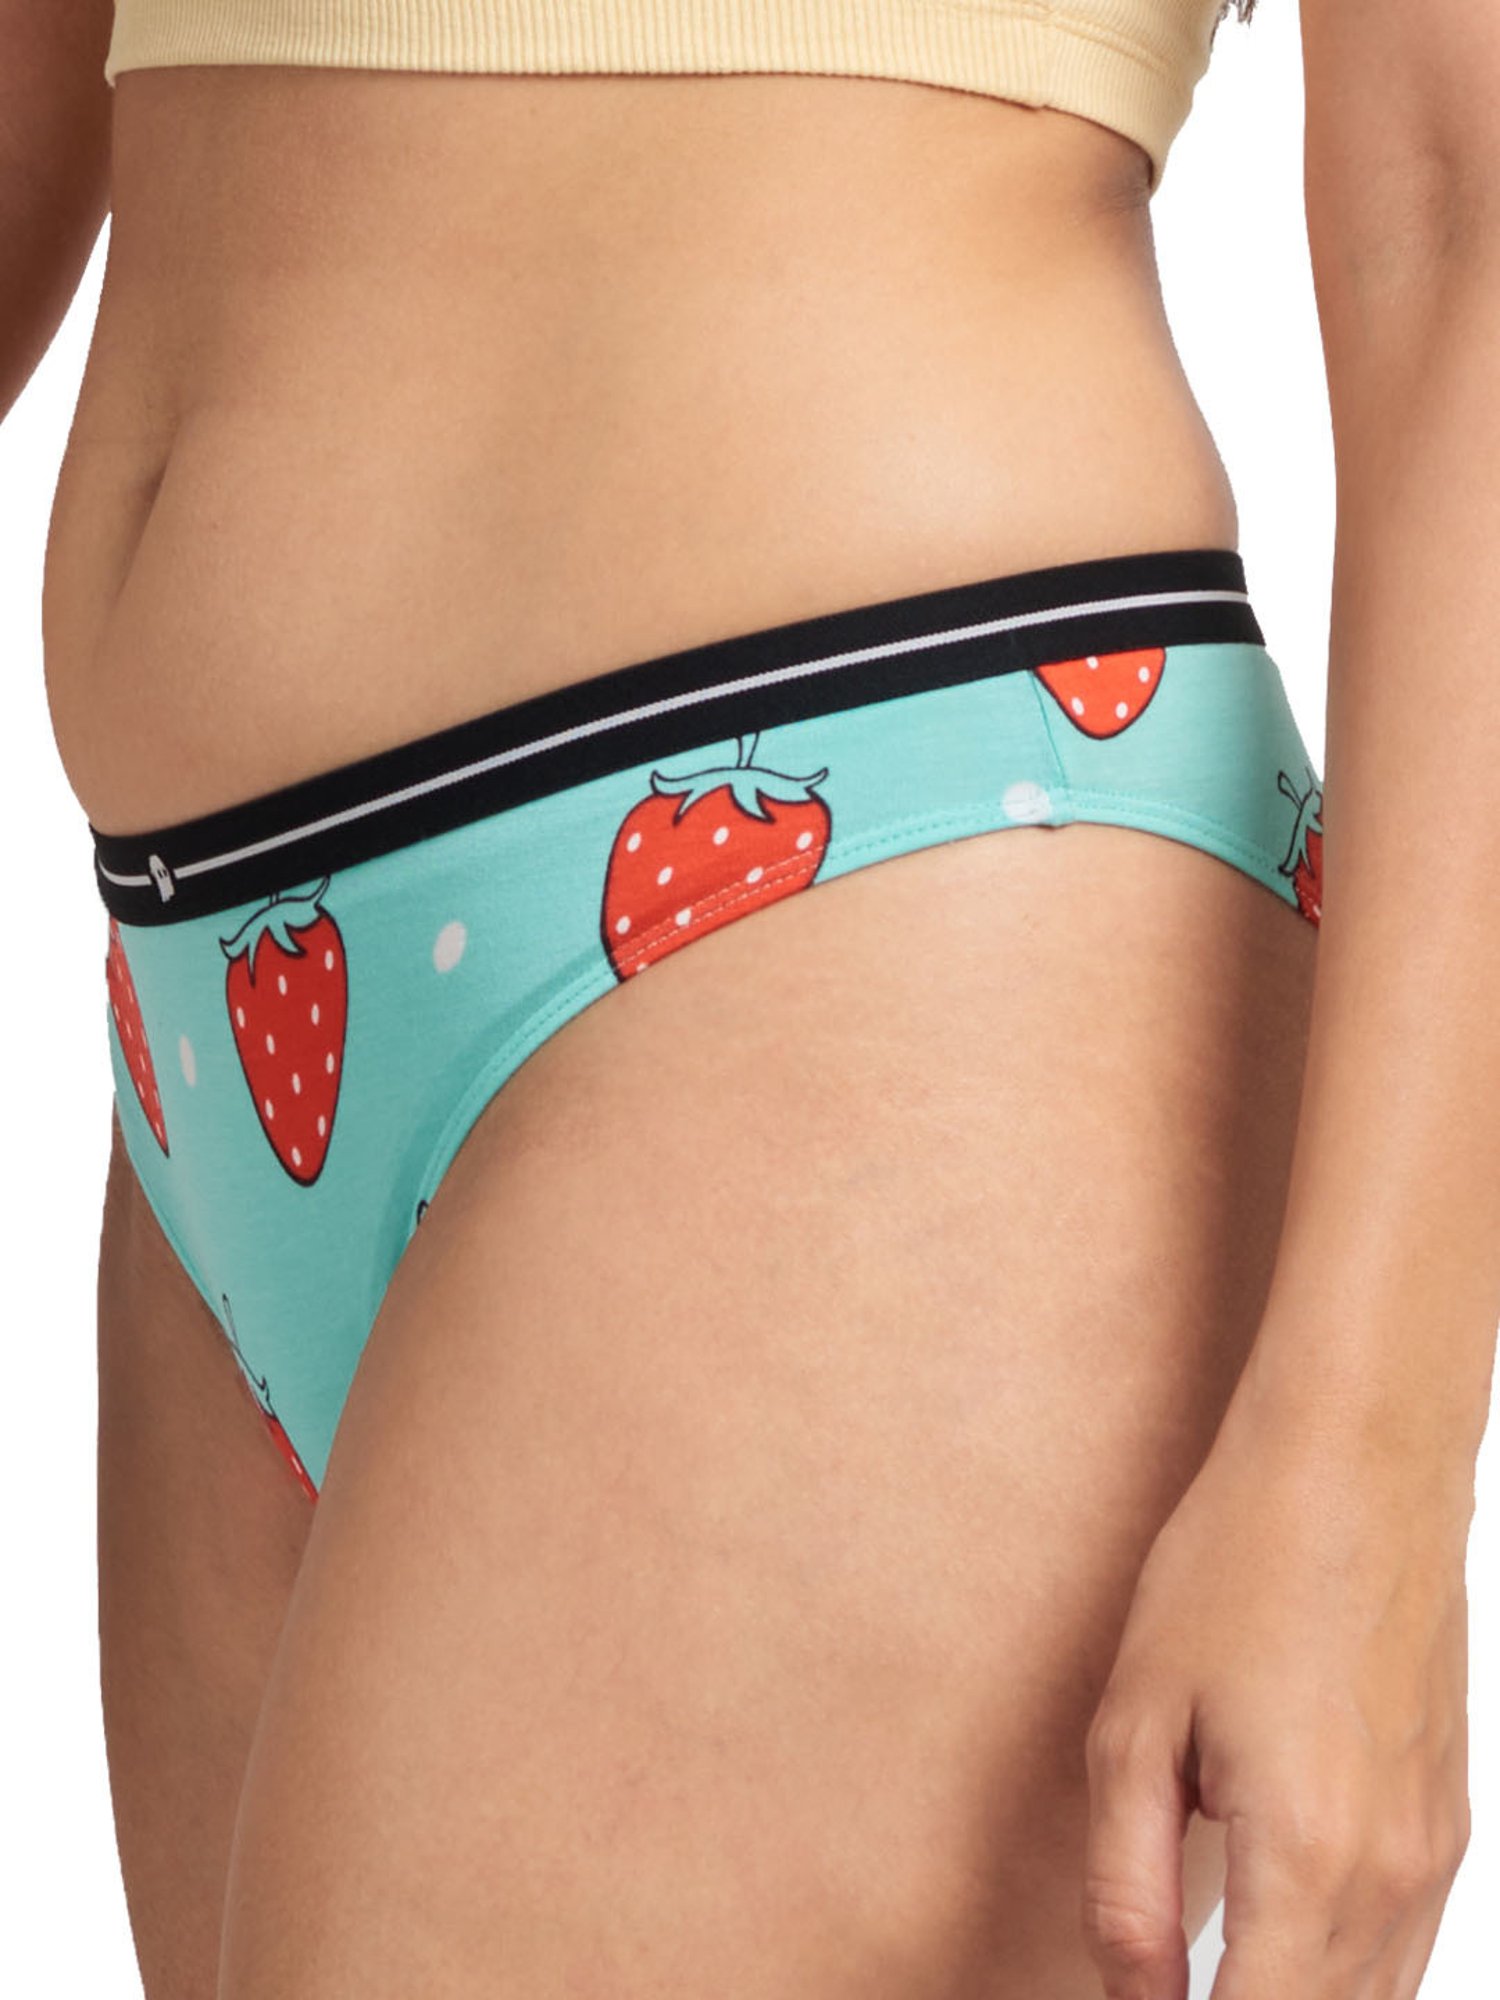 Buy Stashitware 3 Pair Hide Your Cash Bikini Brief, Women's Underwear Secret  Stash Pockets Online at desertcartINDIA